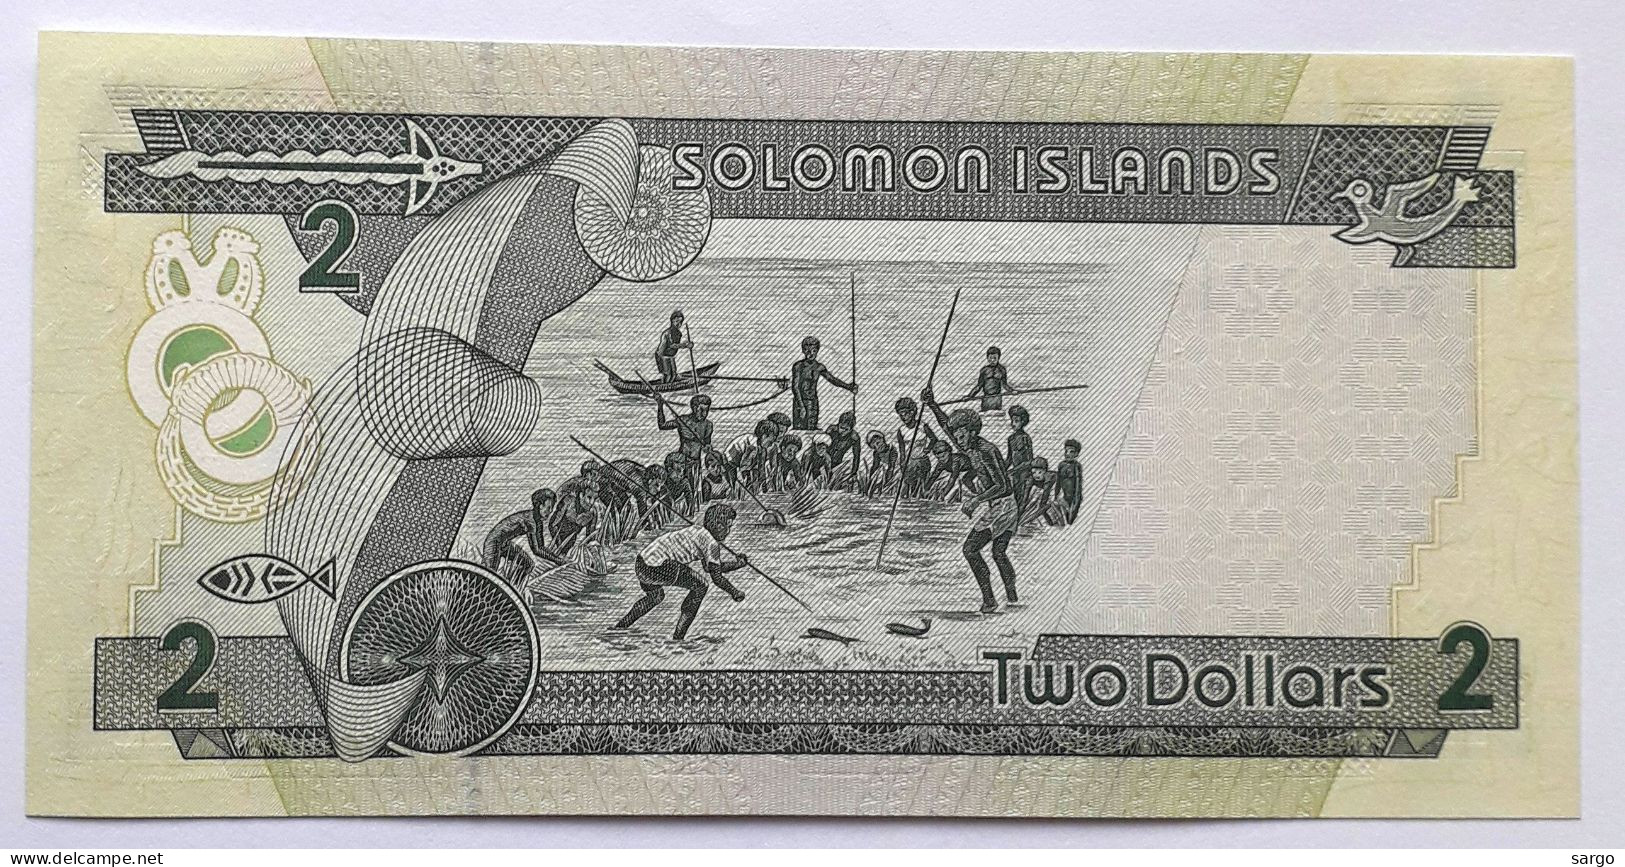 SOLOMON  - 2 DOLLARS - P 18  (1997) - UNC -  BANKNOTES - PAPER MONEY - San Tomé E Principe